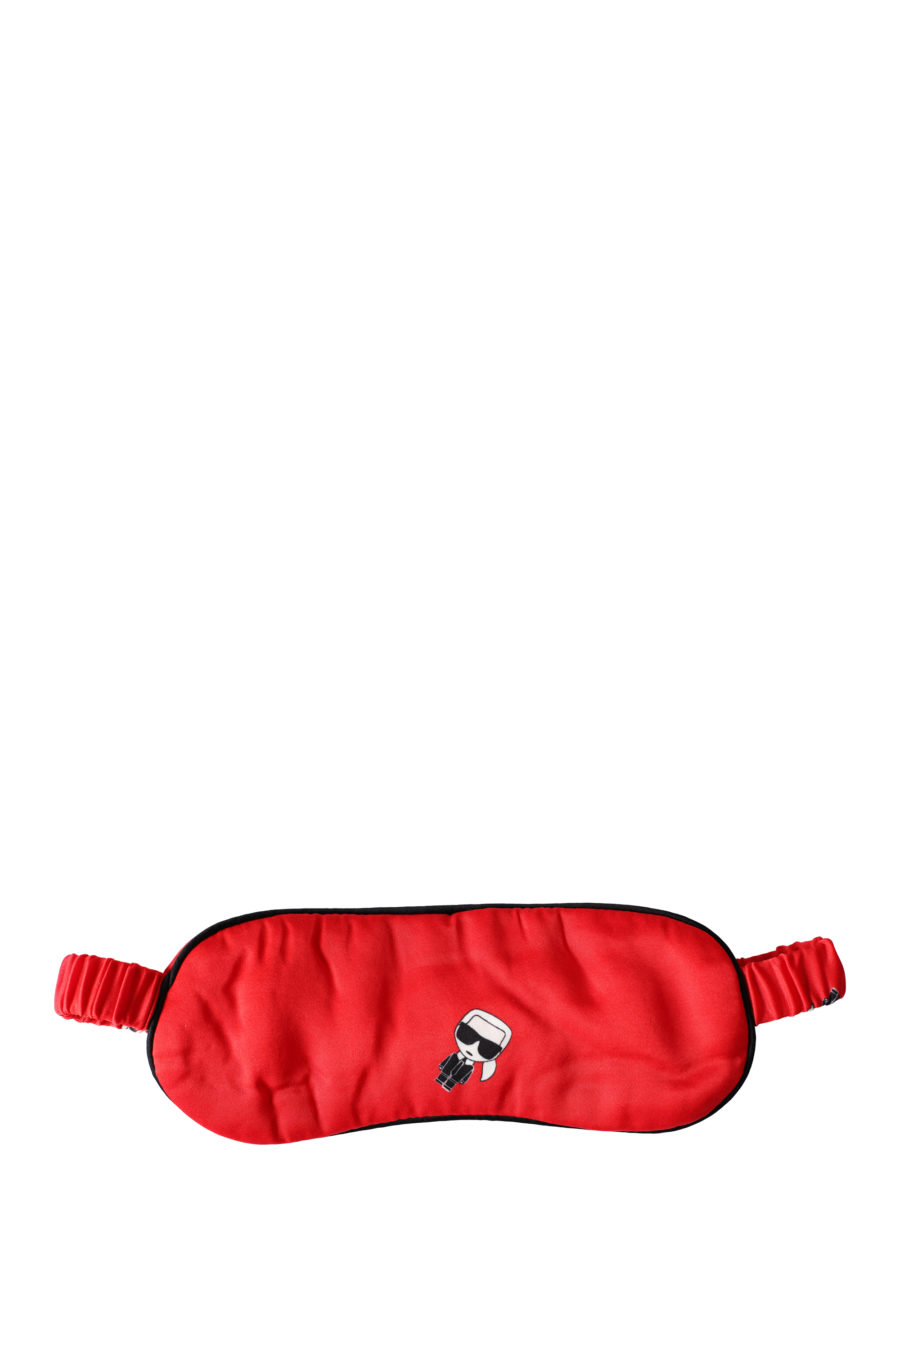 Gift set of red satin pyjamas - IMG 3304